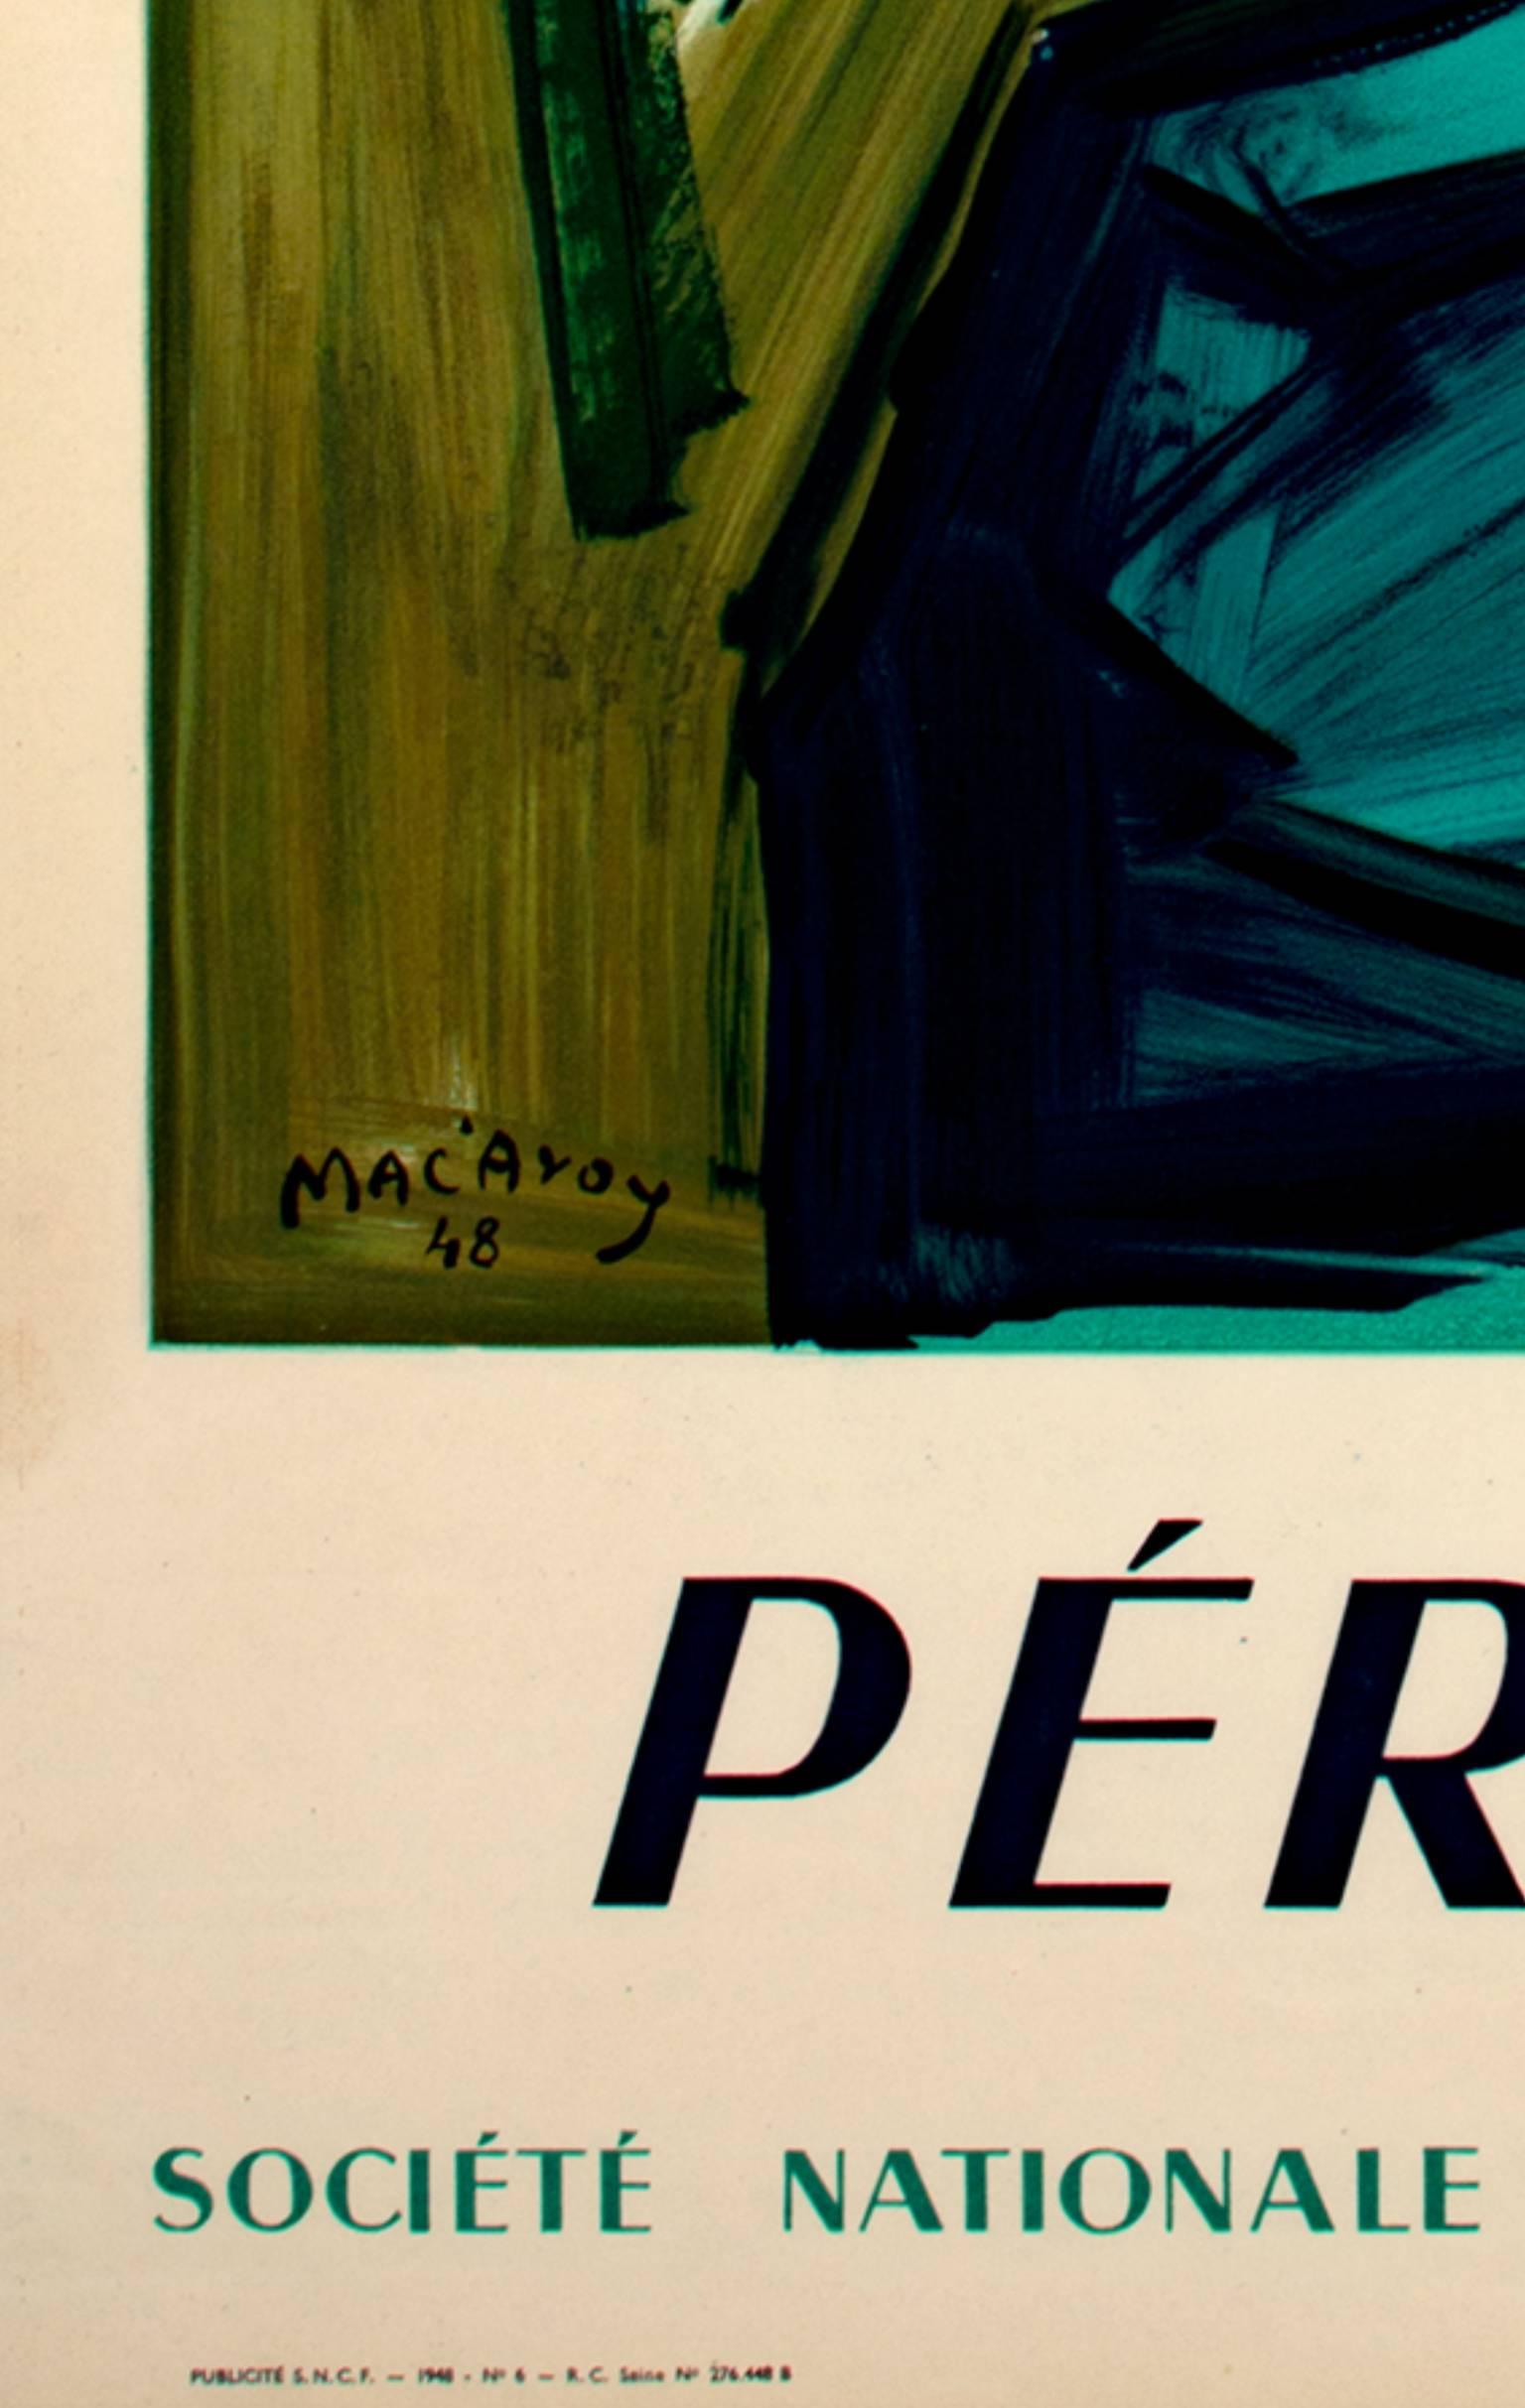 Affiche lithographique en couleur du début du 20e siècle, arbres de montagne et texte ciel - Beige Landscape Print par Edouard-Georges Mac-Avoy